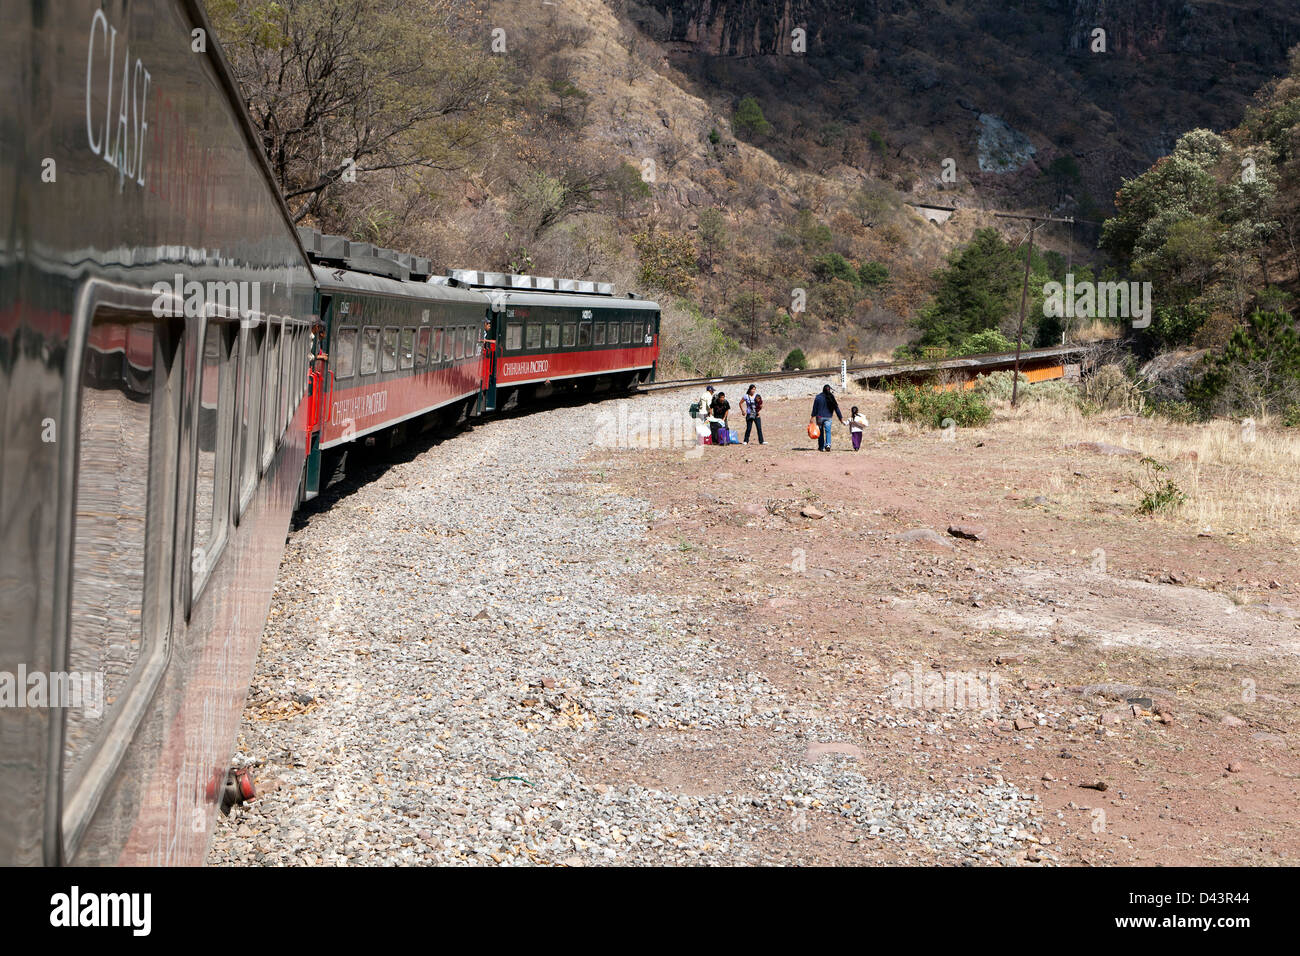 Touristen fotografieren entlang in den Kupfer Canyon in Mexiko, den Zug, während andere aussteigen, um ihre Reise fortzusetzen. Stockfoto